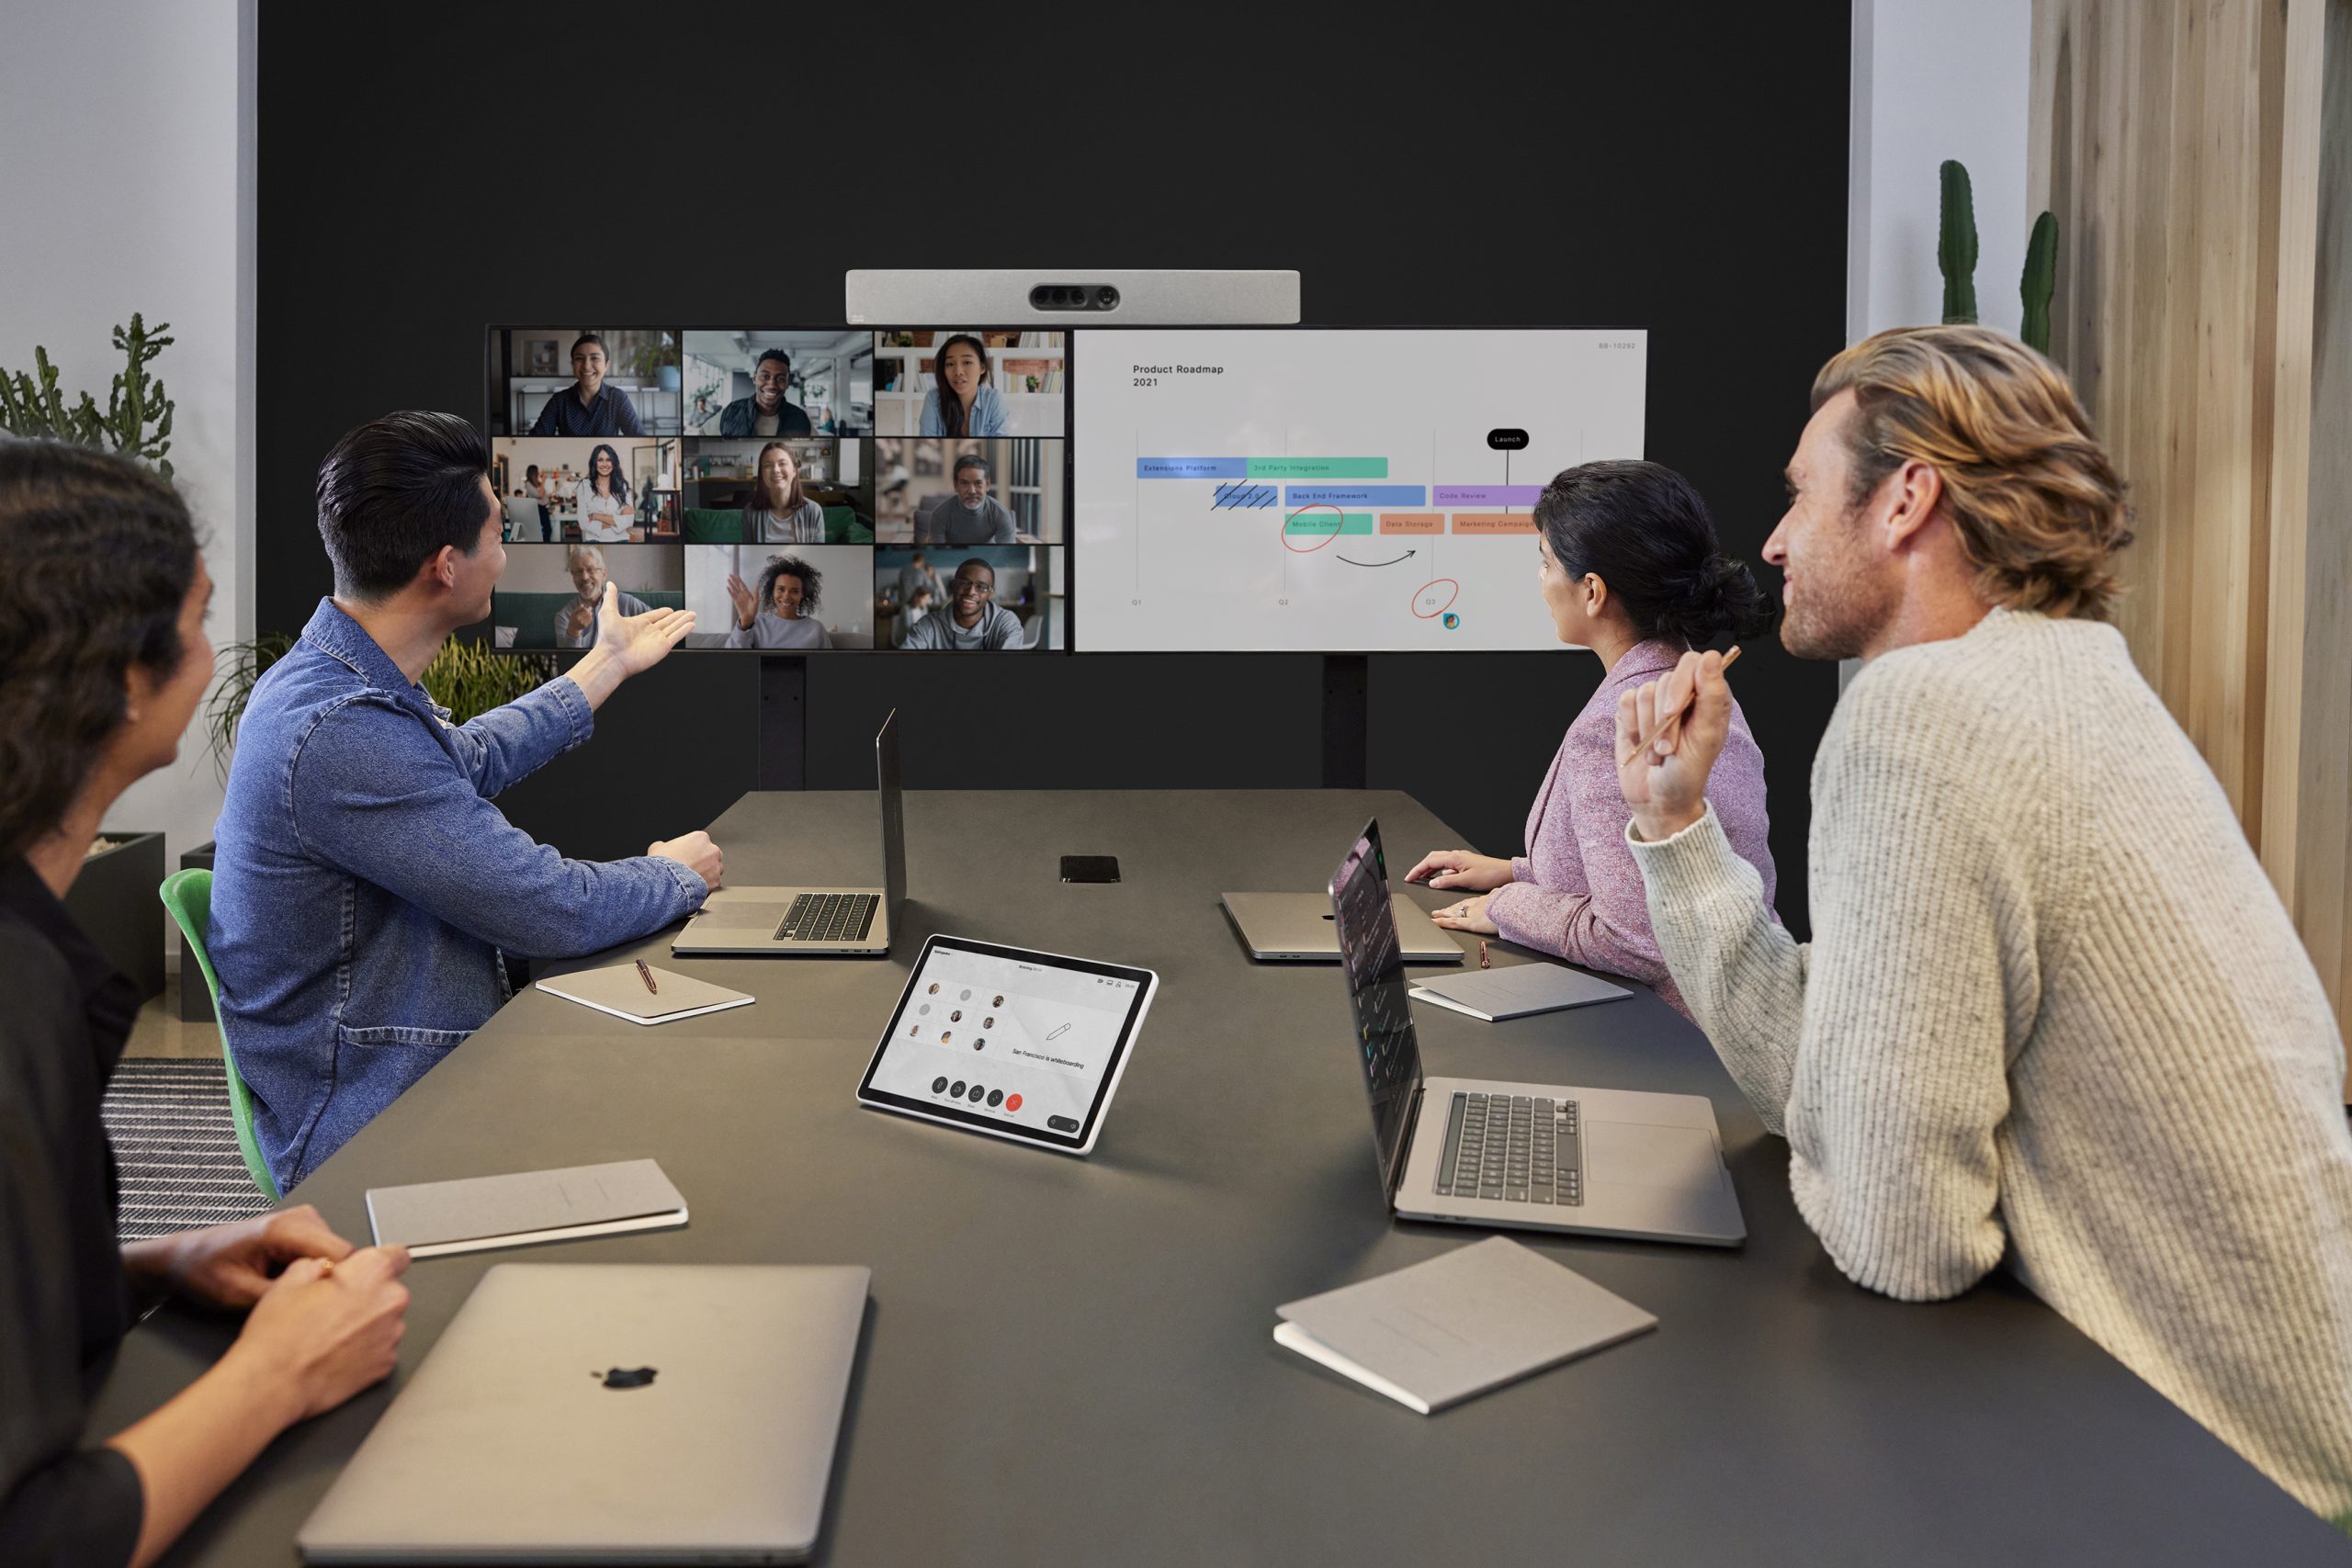 办公室内，四人围坐，注视屏幕进行视频会议。屏幕显示图表和多位远程参与者的画面。环境现代化，技术设备先进。